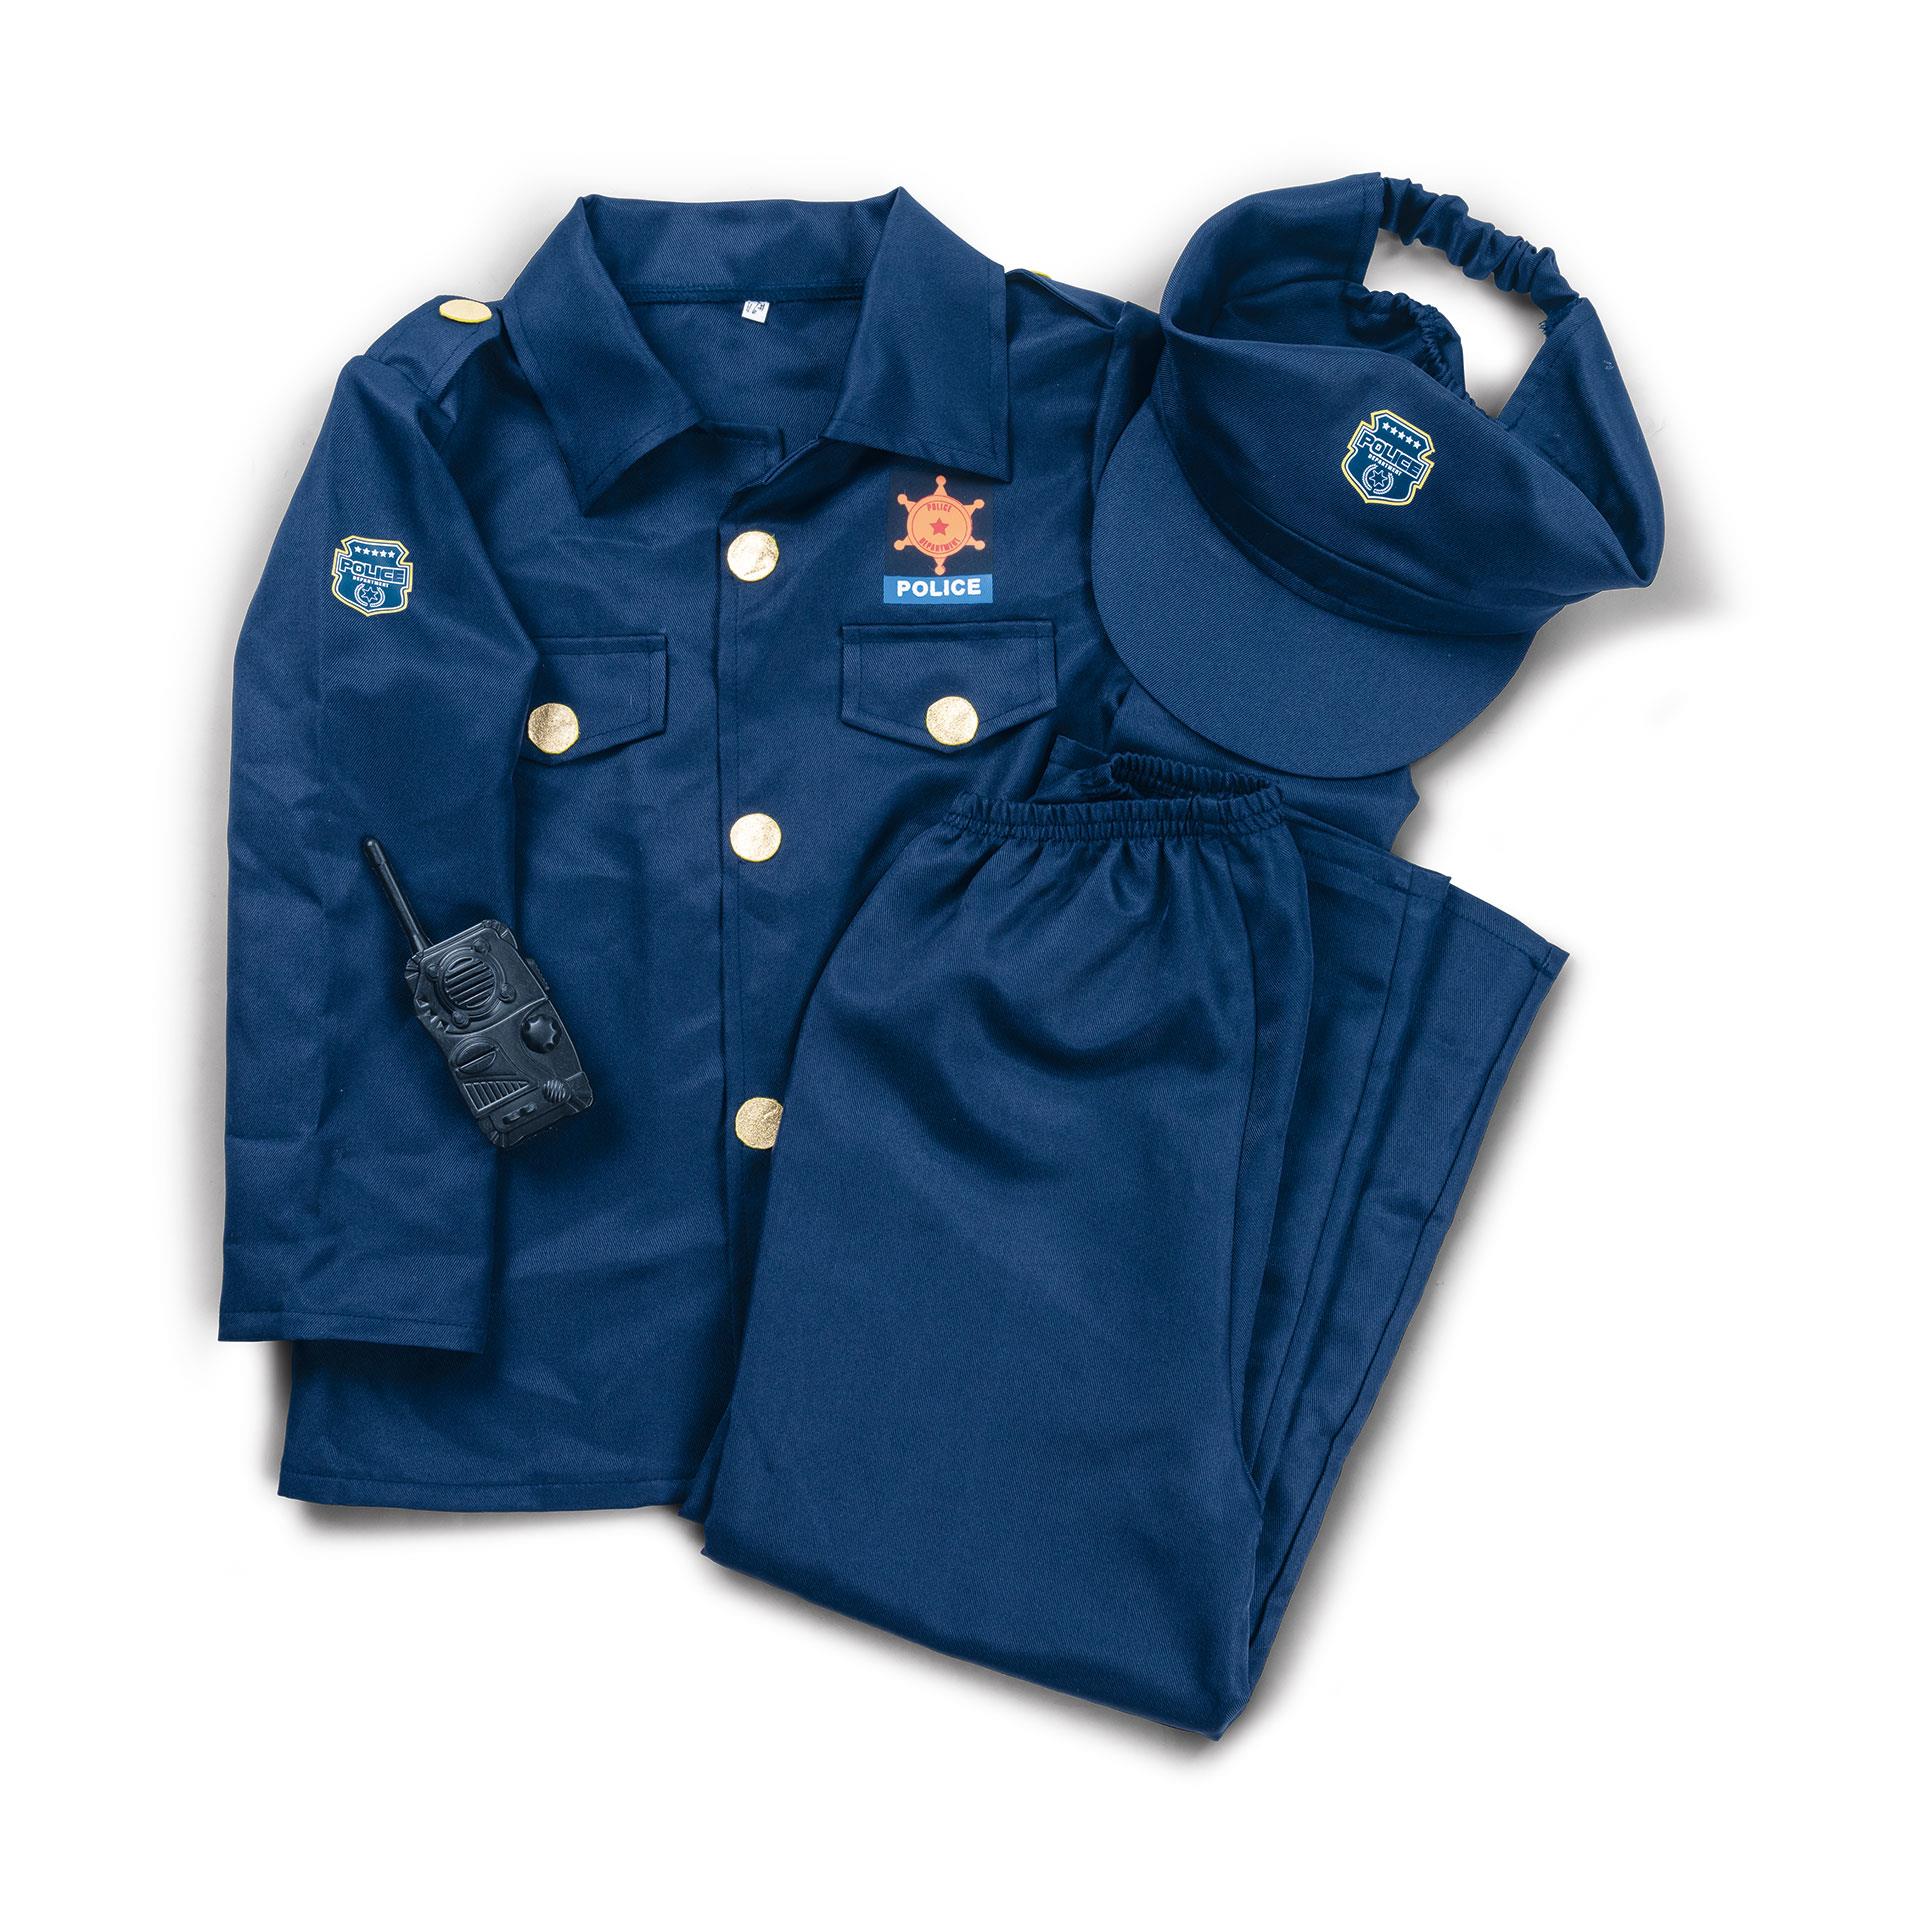 Costume da Poliziotto Blu per bambini